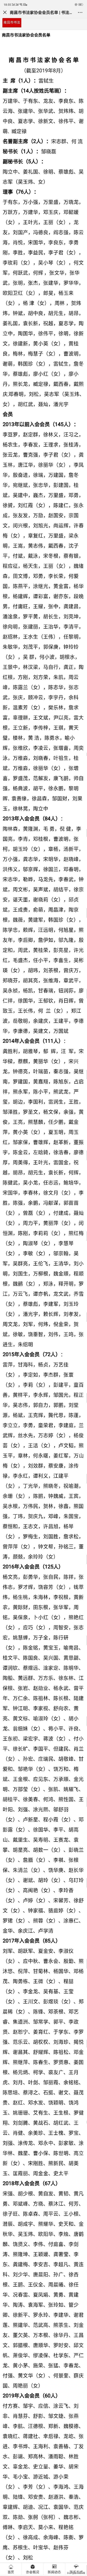 南昌市书法家协会名单(更新至2019年8月)